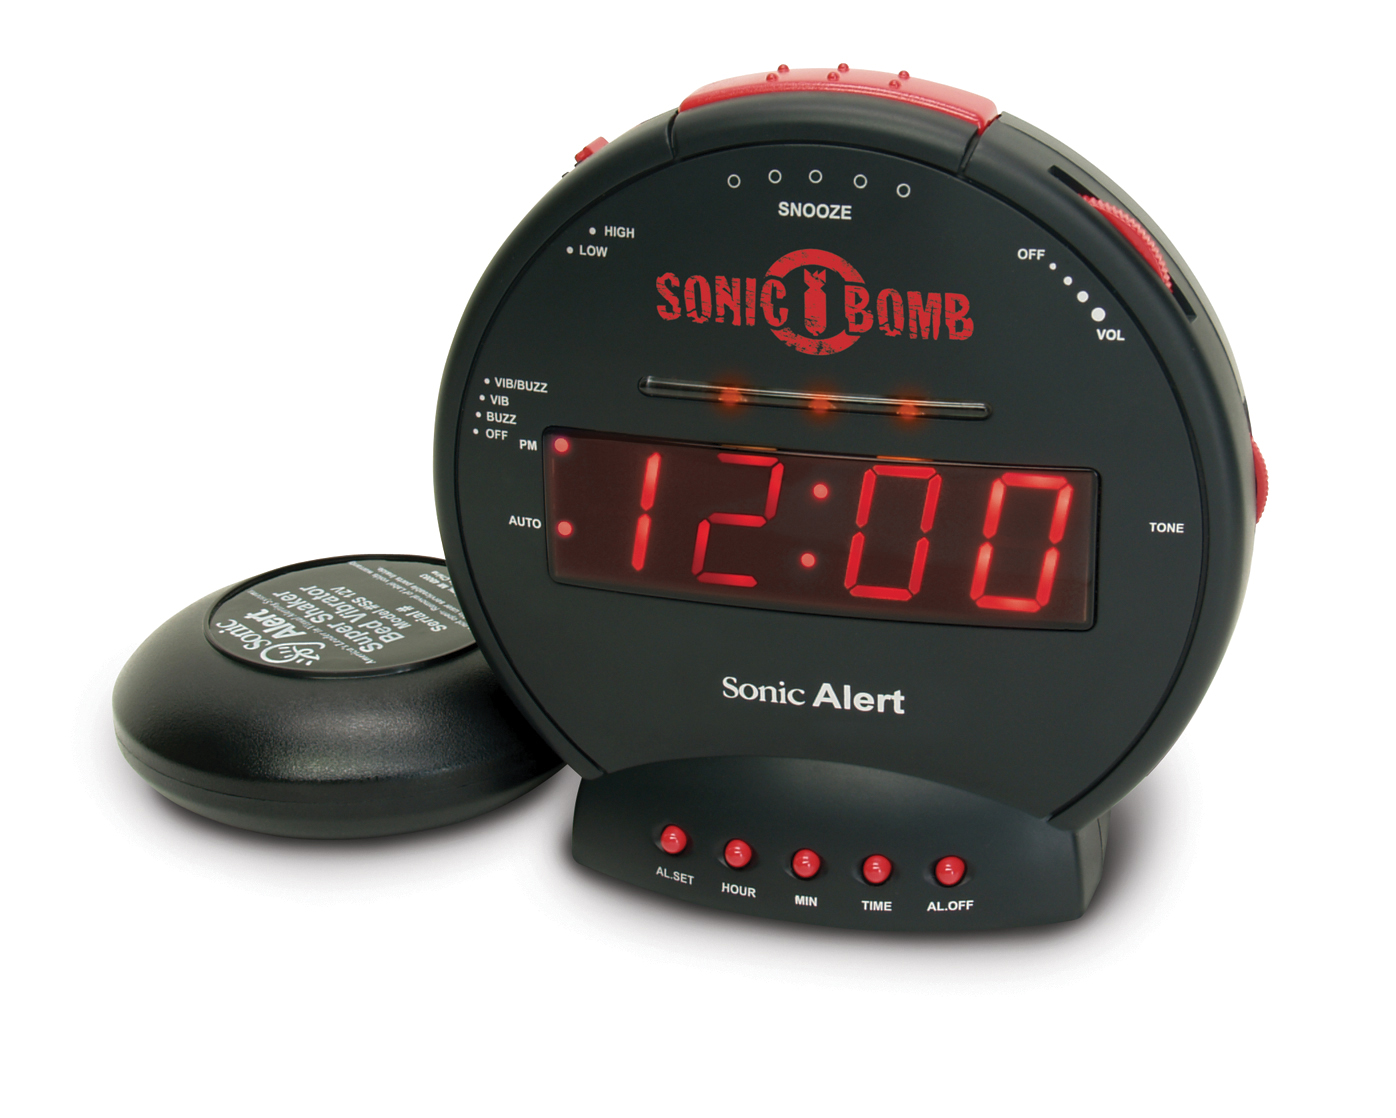 aquarius soft pc alarm clock pro 3.0.9.5